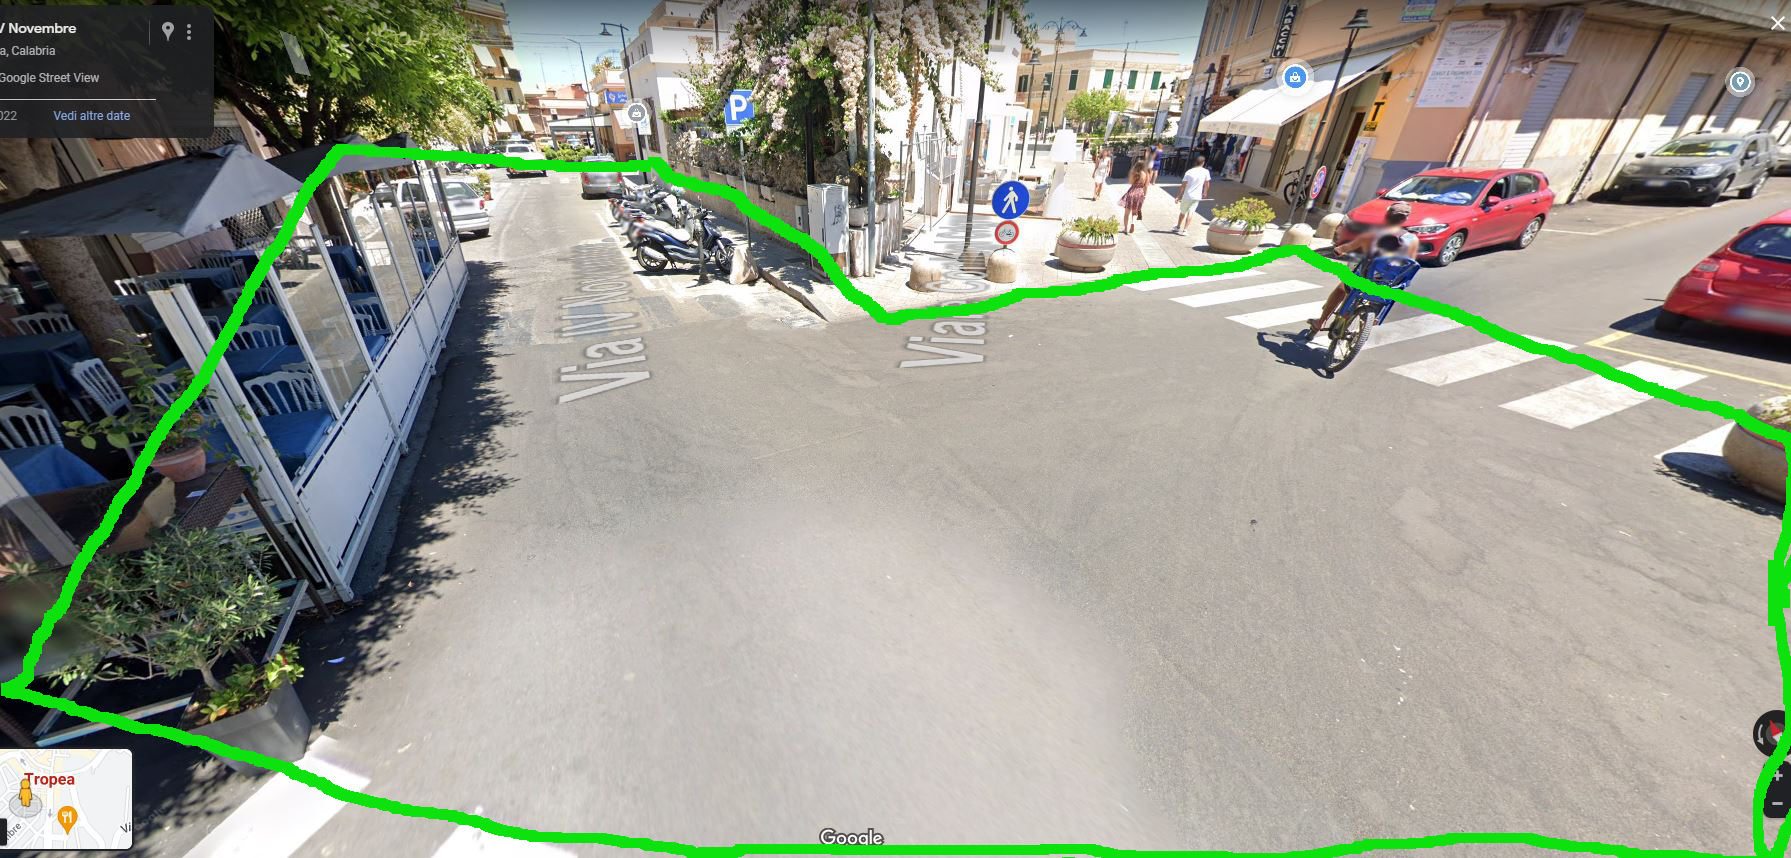 Lavori pubblici: riqualificazione urbana delle strade a ridosso di Piazza Vittorio Veneto.